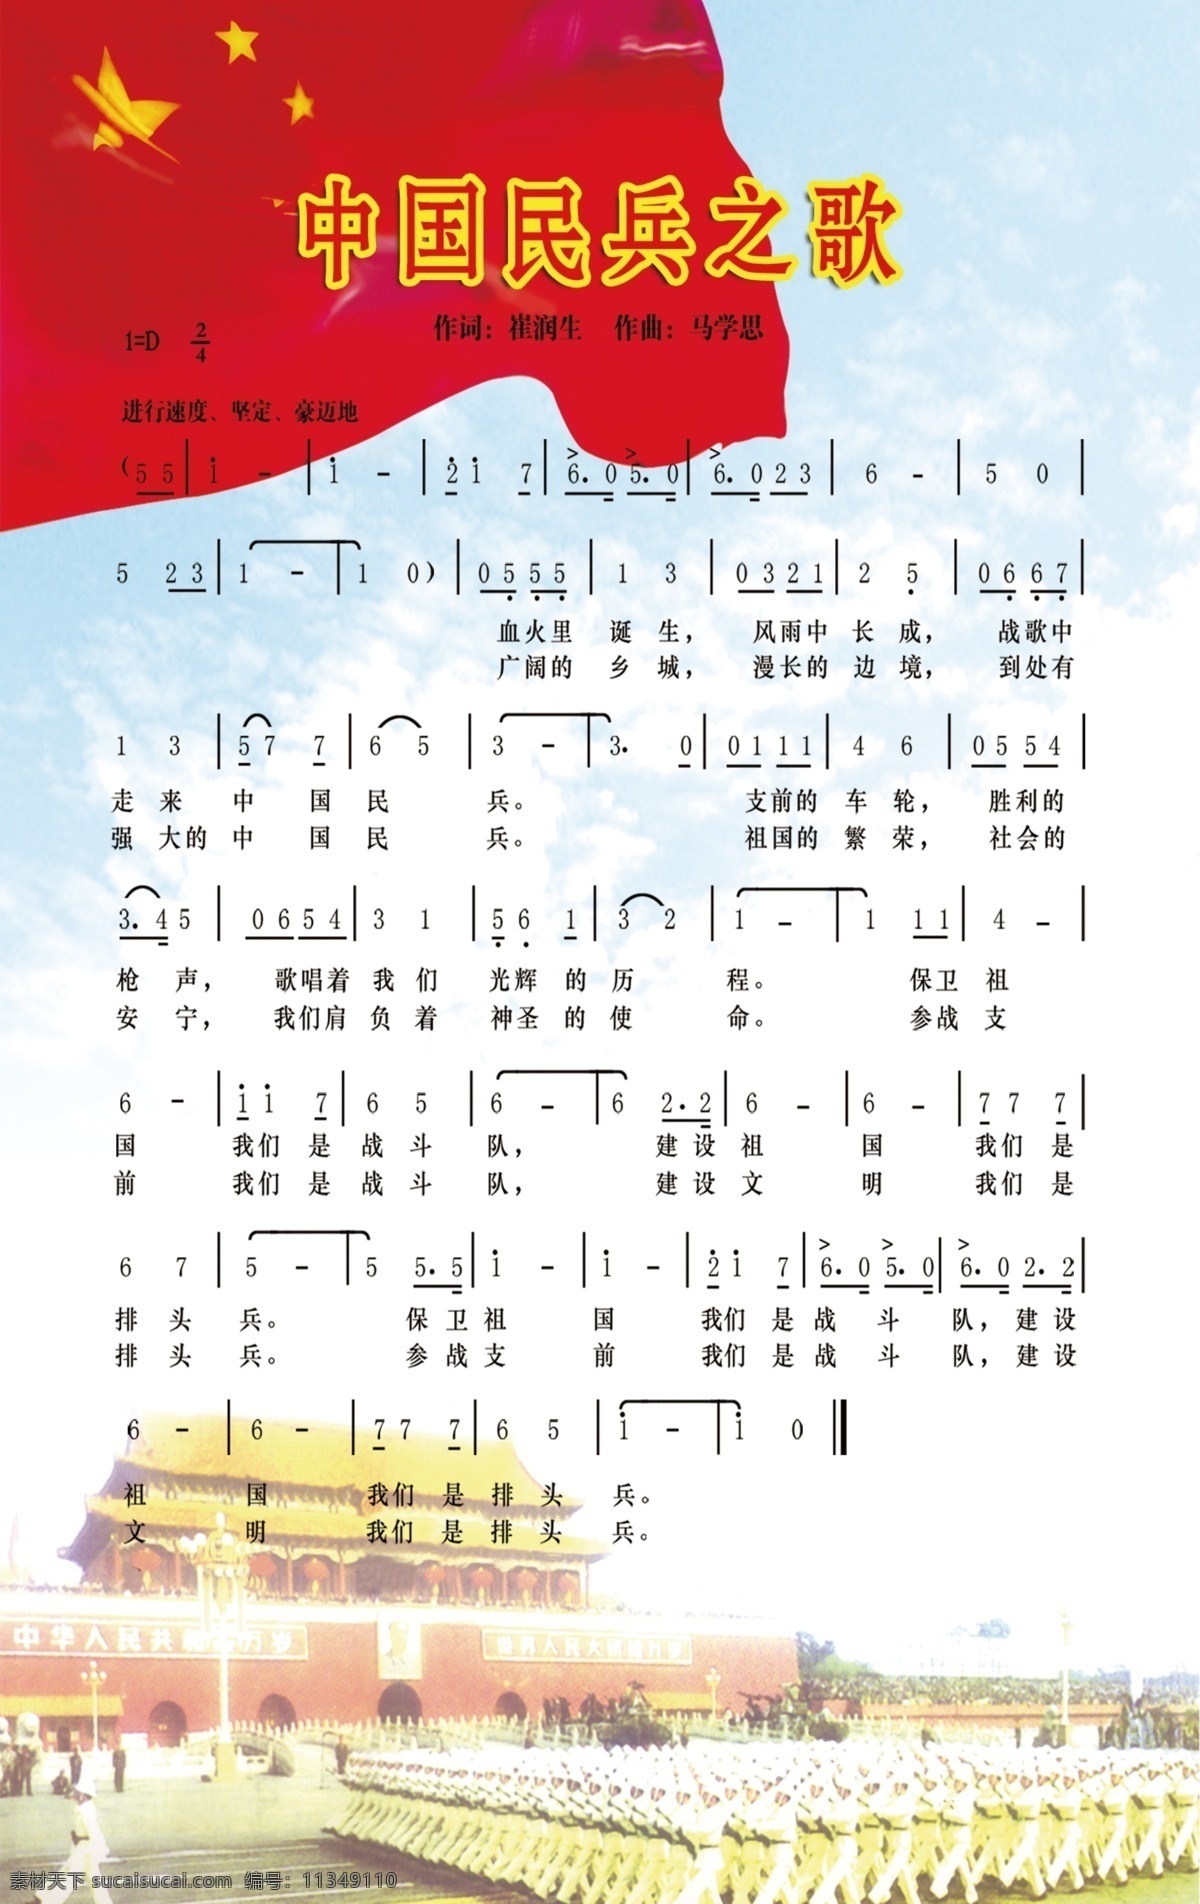 中国民兵之歌 中国 民兵 歌 音符 国旗图片 天安门广场 天蓝色背景 分层 源文件